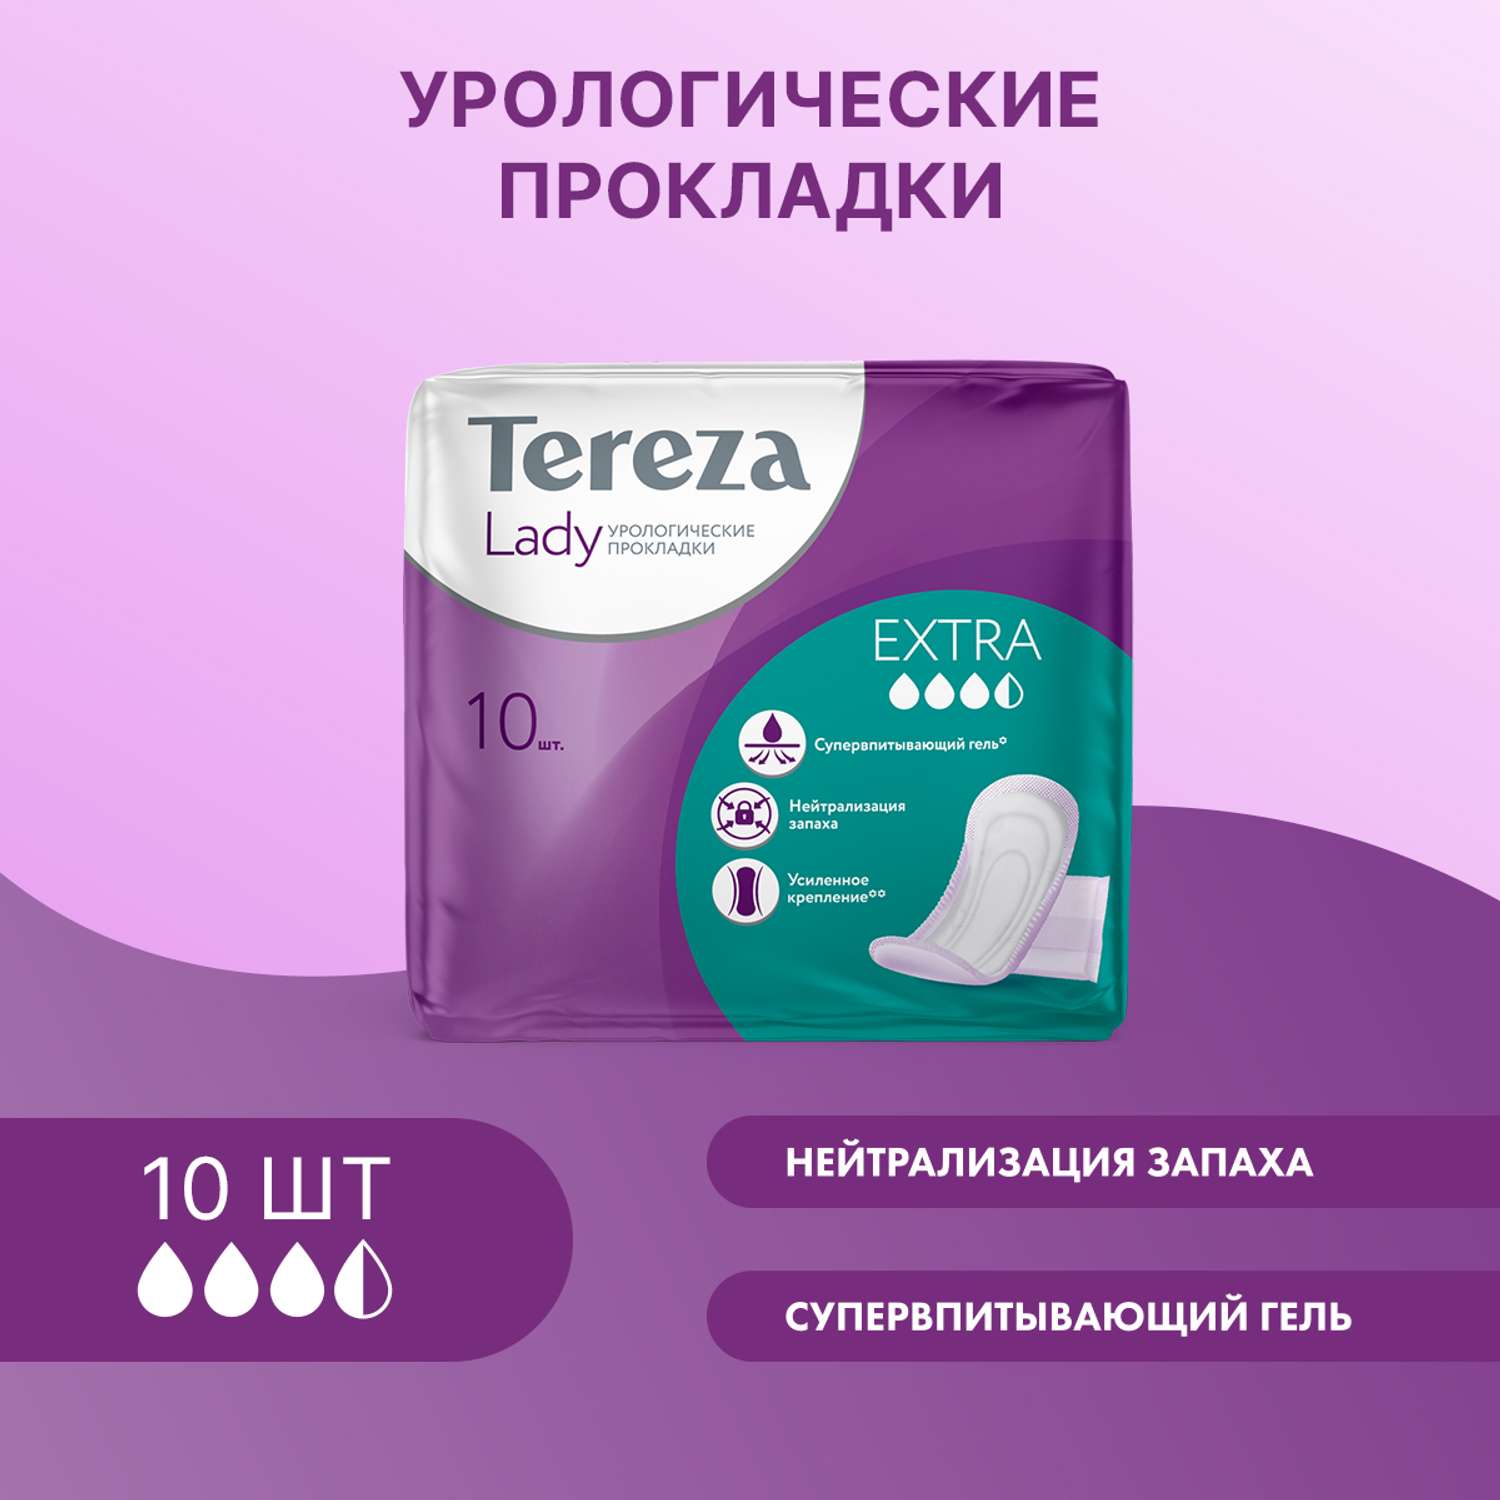 Урологические прокладки TerezaLady для женщин Extra при недержании нейтрализующие запах трехслойные 10 шт - фото 1